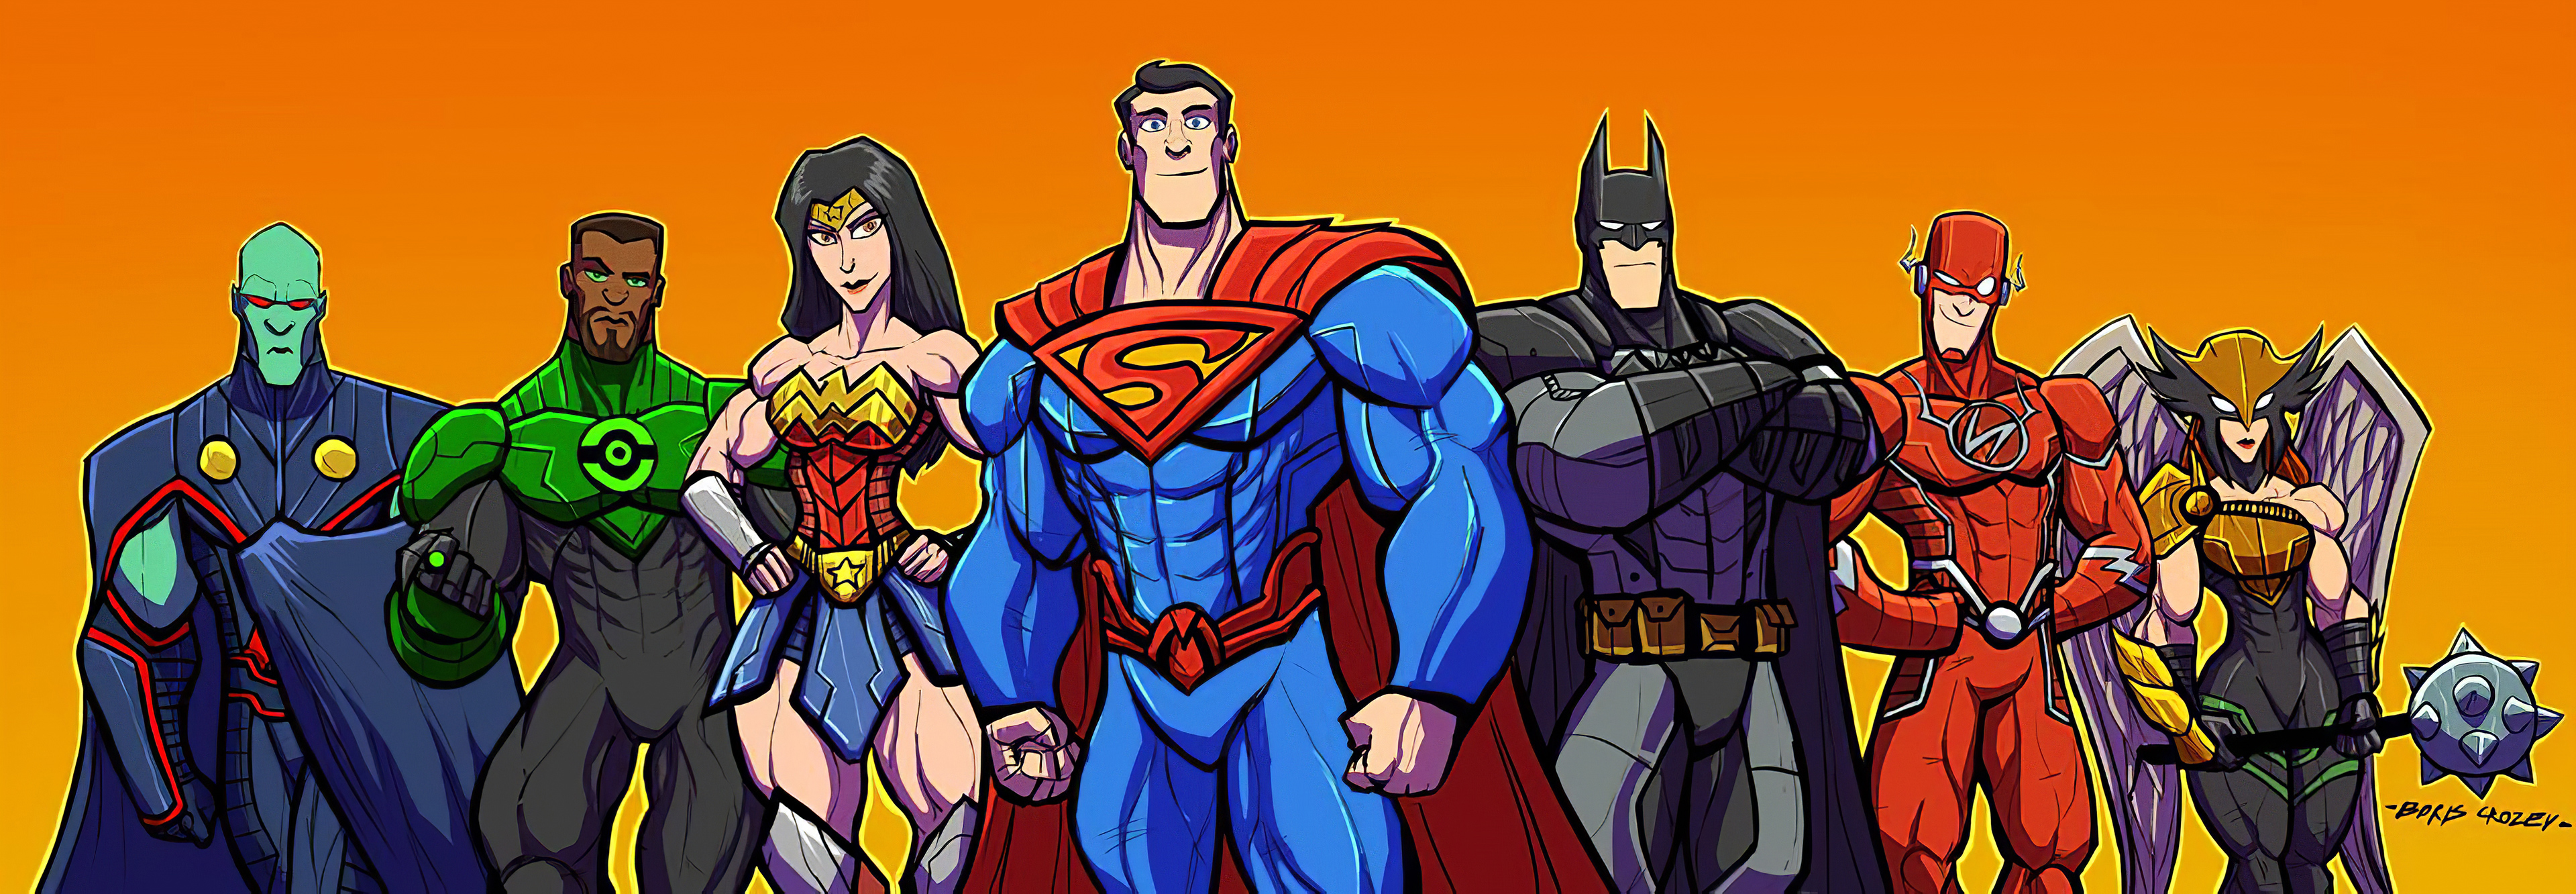 Wallpapers justice league superheroes rendering on the desktop